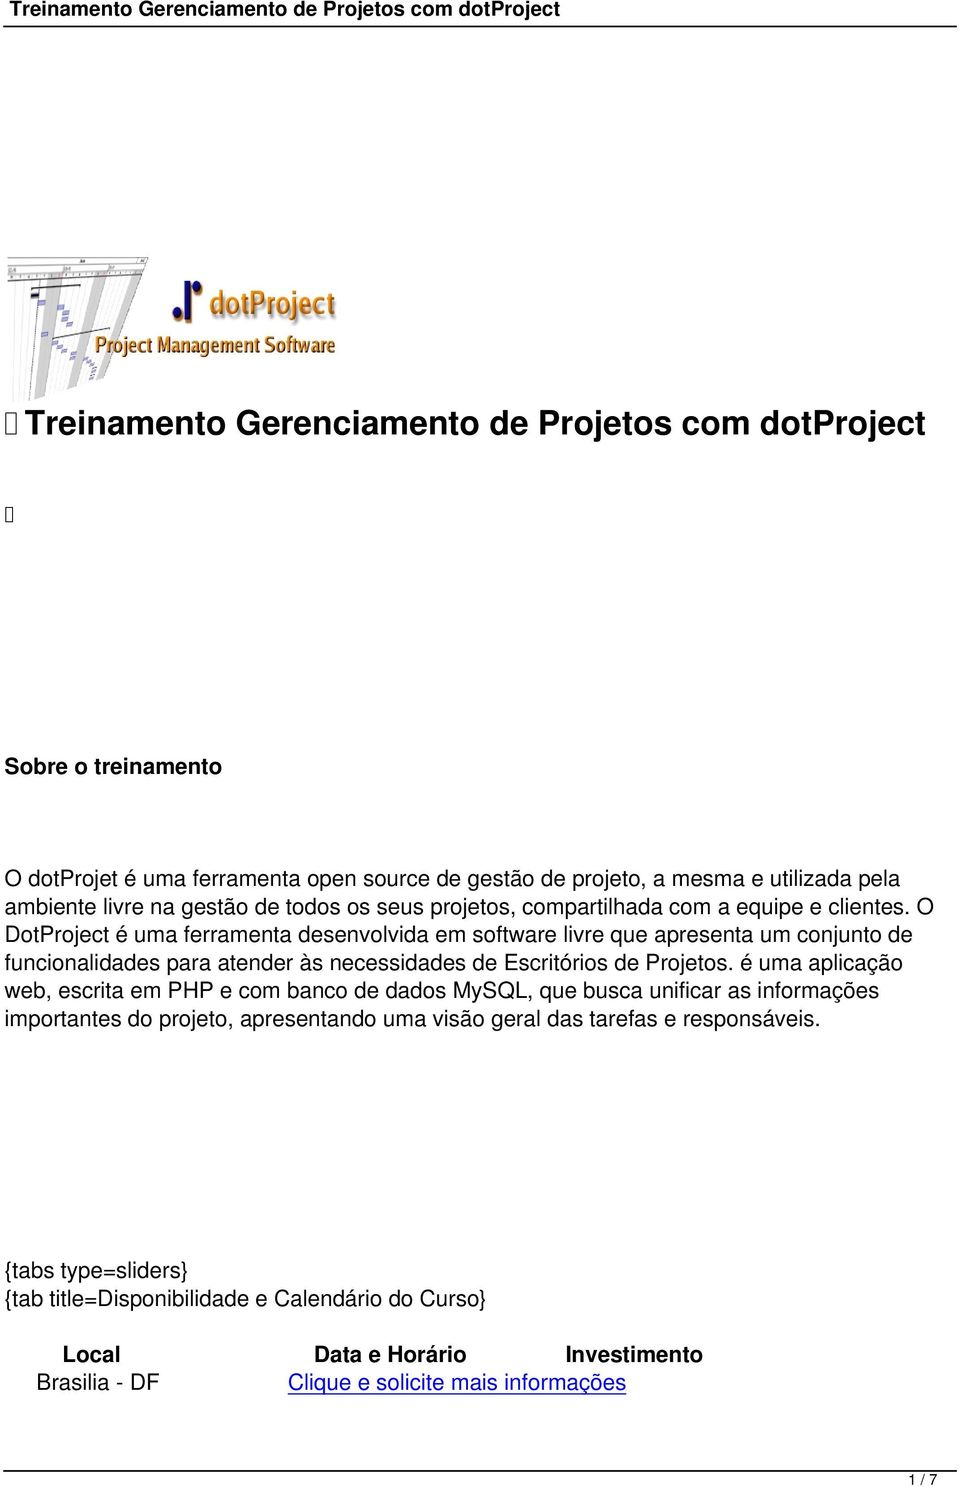 O DotProject é uma ferramenta desenvolvida em software livre que apresenta um conjunto de funcionalidades para atender às necessidades de Escritórios de Projetos.